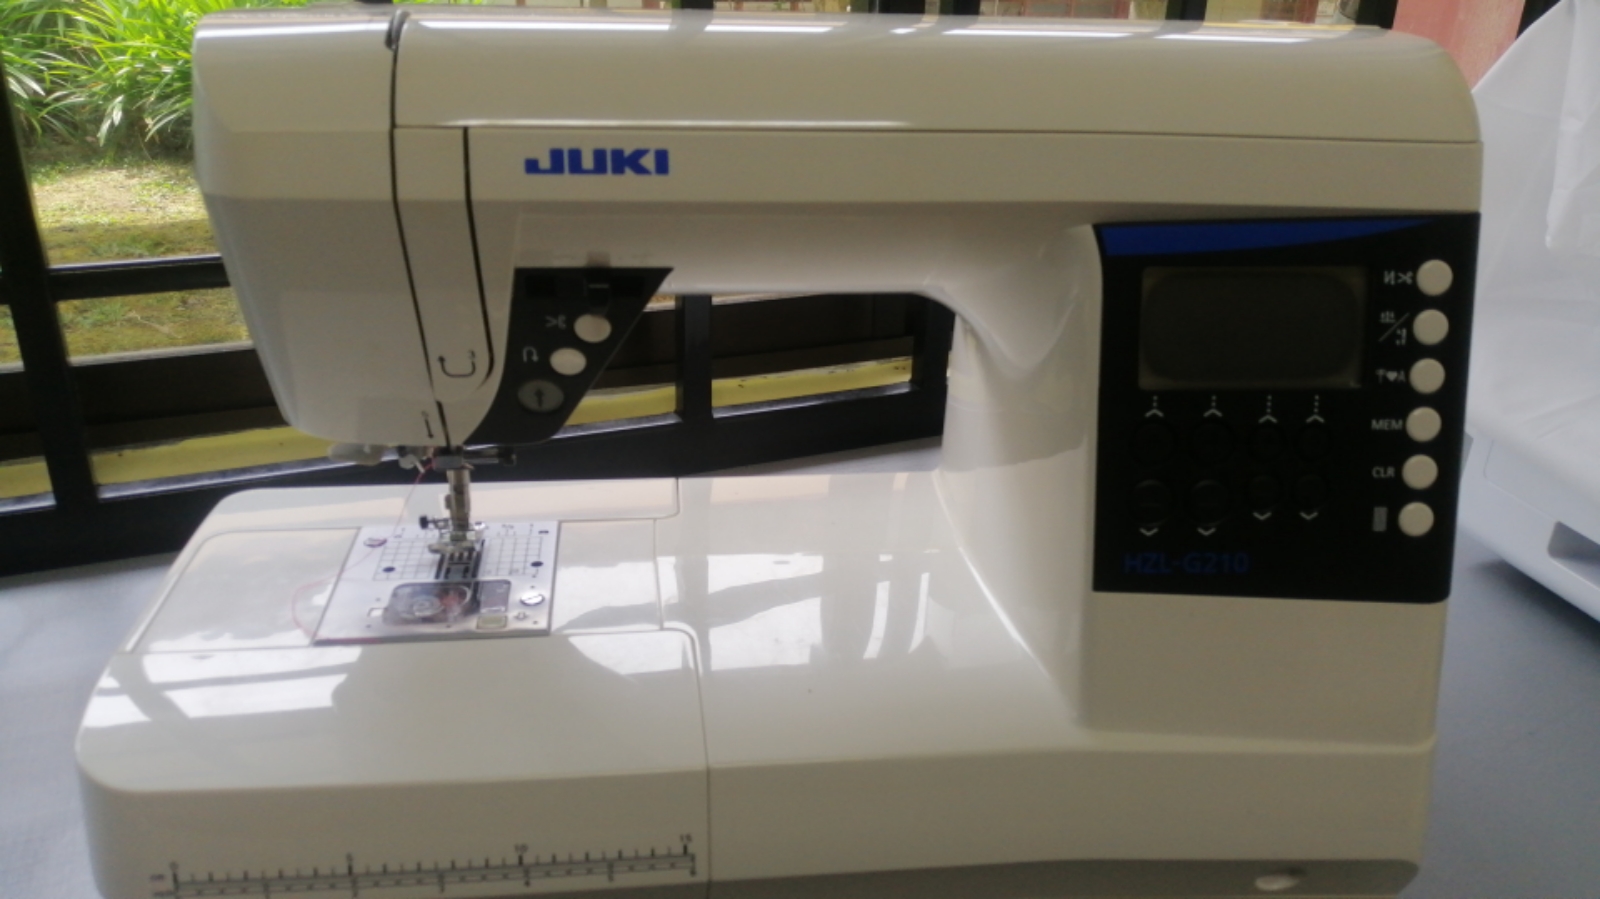 JOB REPAIR SEVIS FOR JUKI SEWING MACHINE 